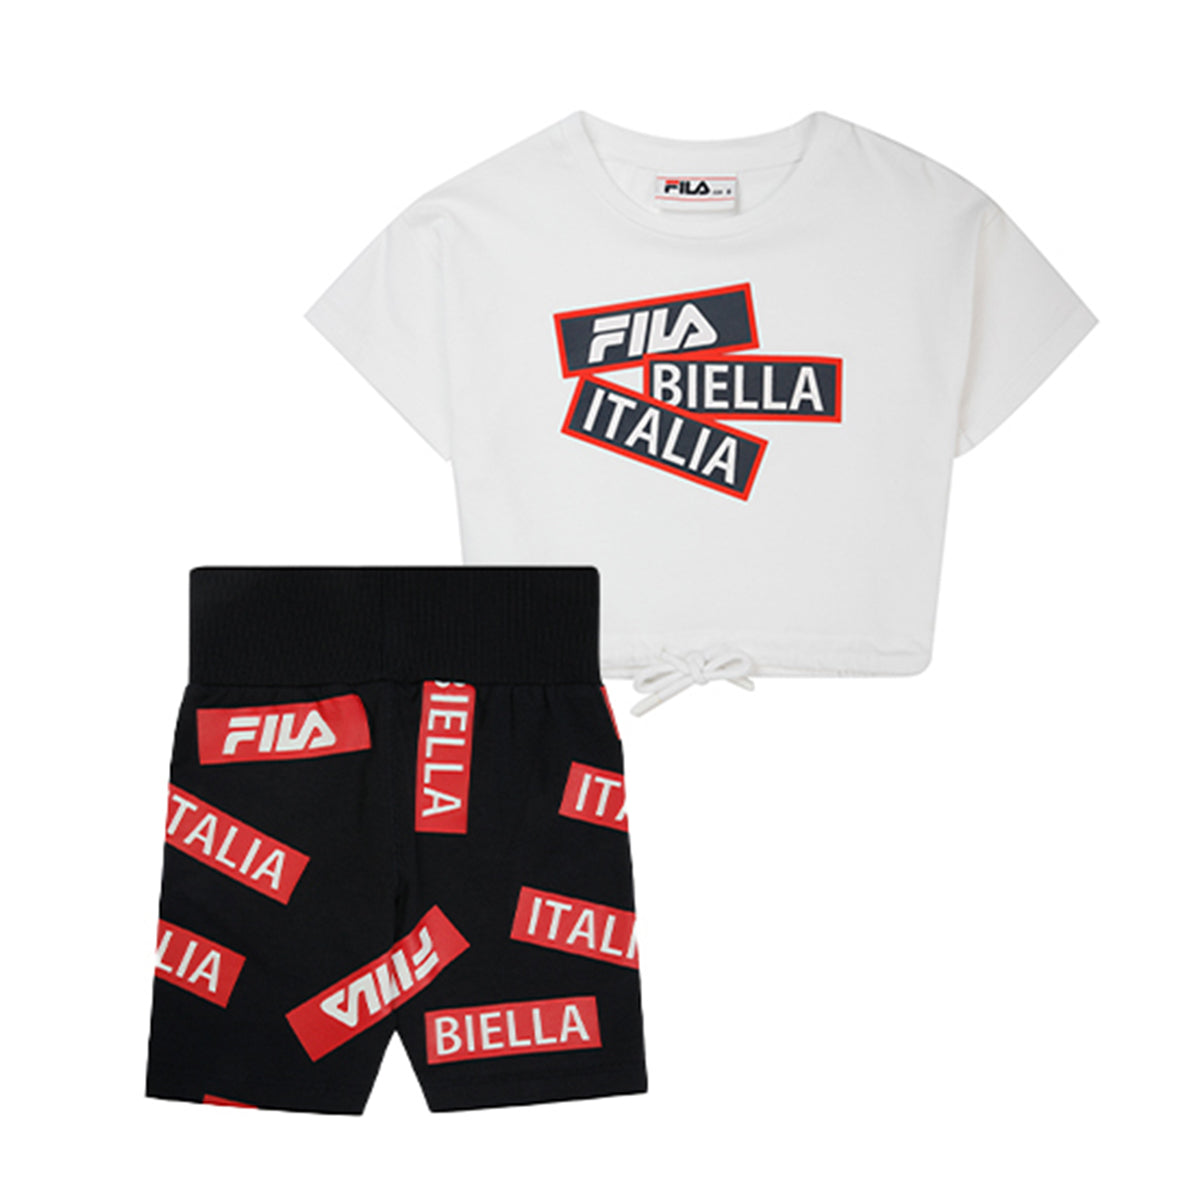 חליפת טייץ FILA לילדות לוגו BIELLA ITALIA